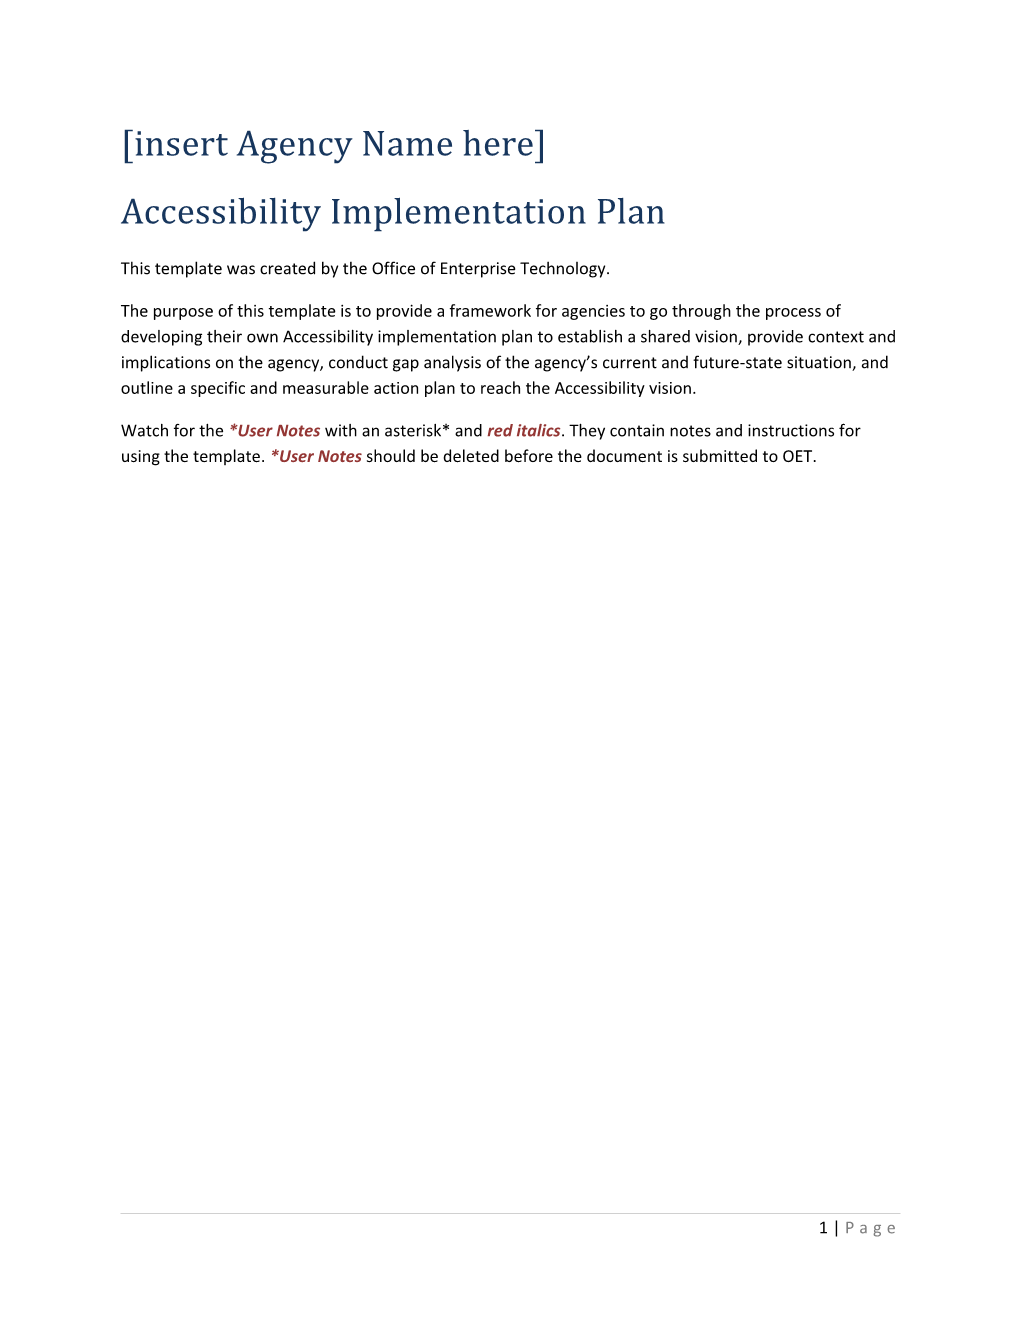 Accessibility Implementation Plan Template (Appendix 3)